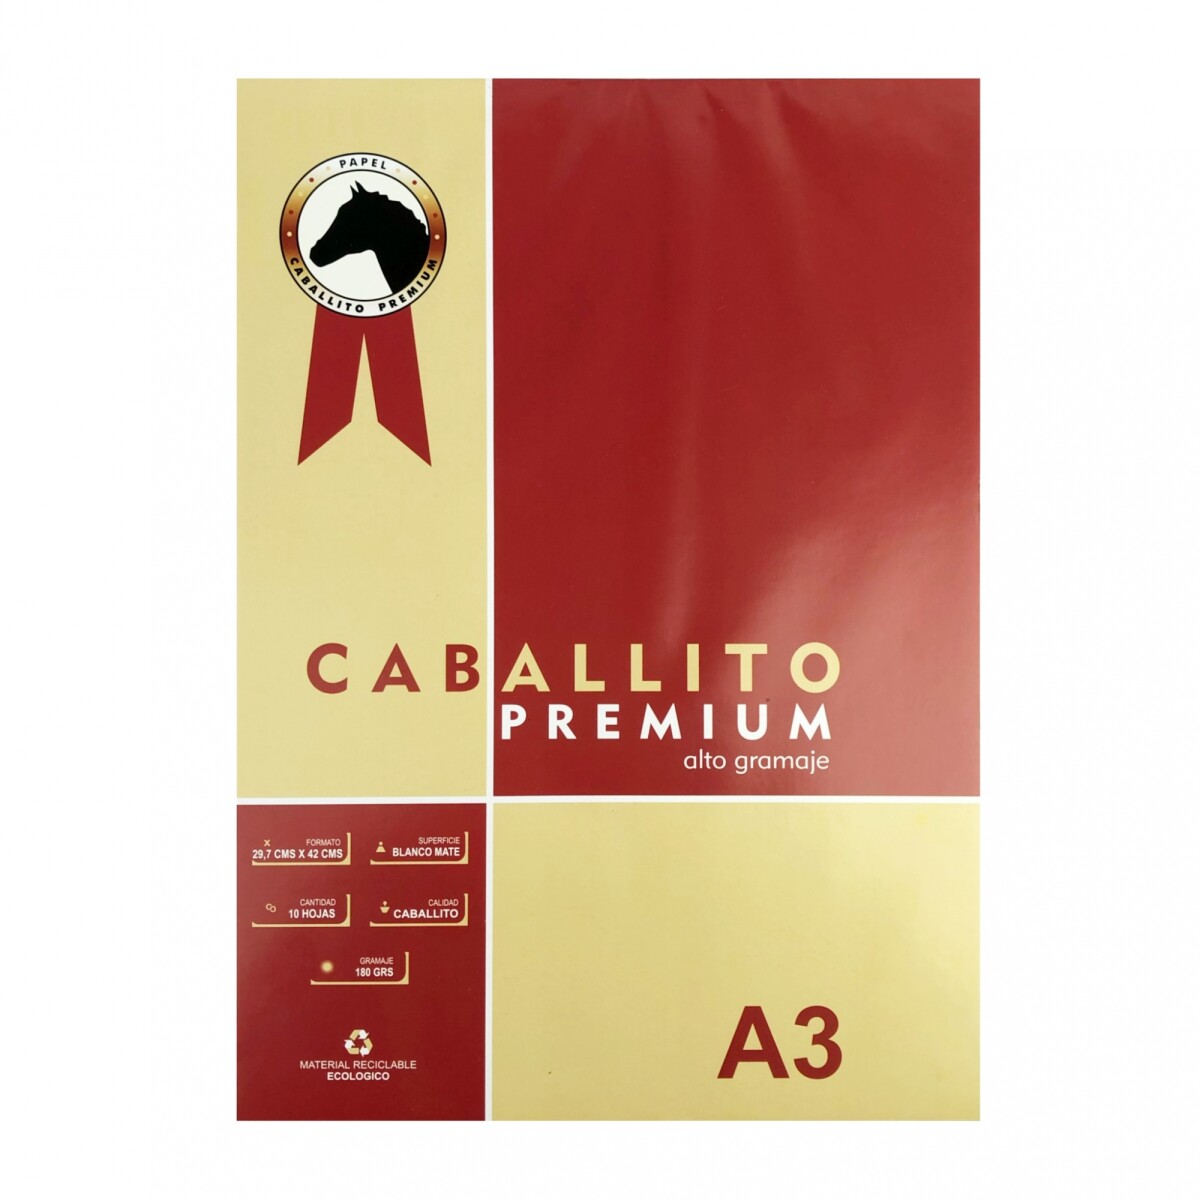 Block Caballito Premium 180 grs - A3 